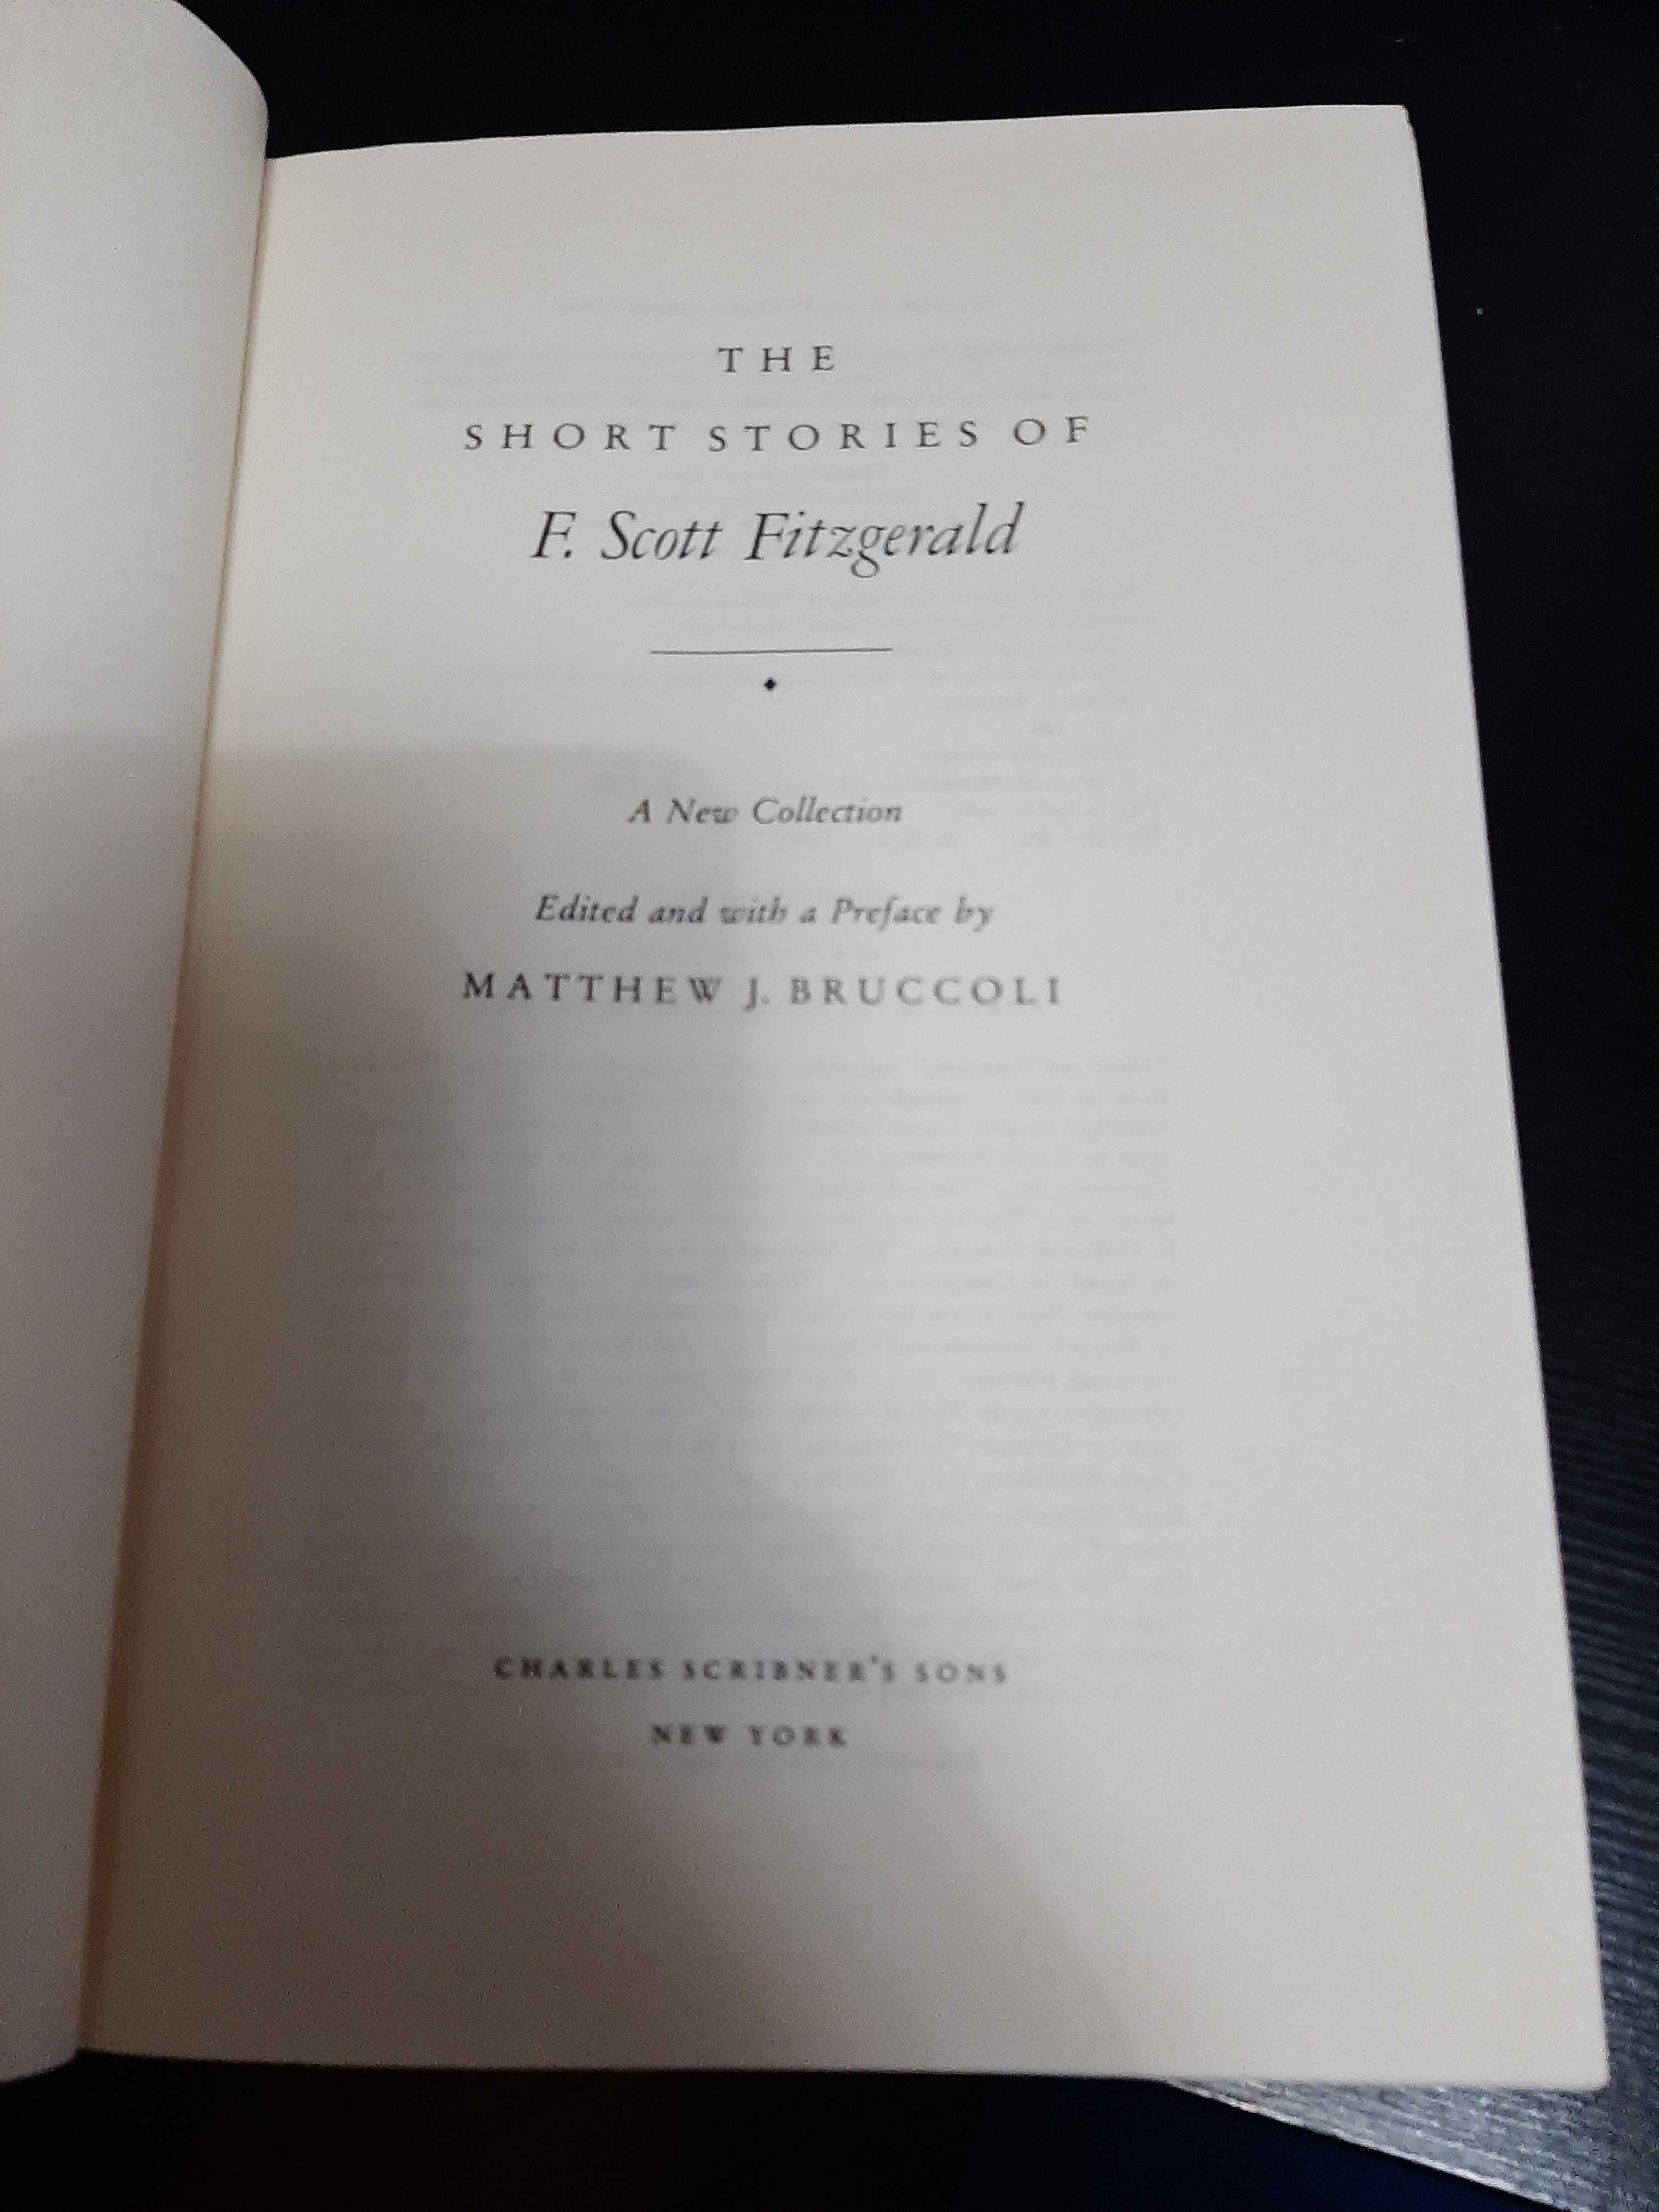 The Short Stories of F Scott Fitzgerald – edited by Matthew J Bruccoli